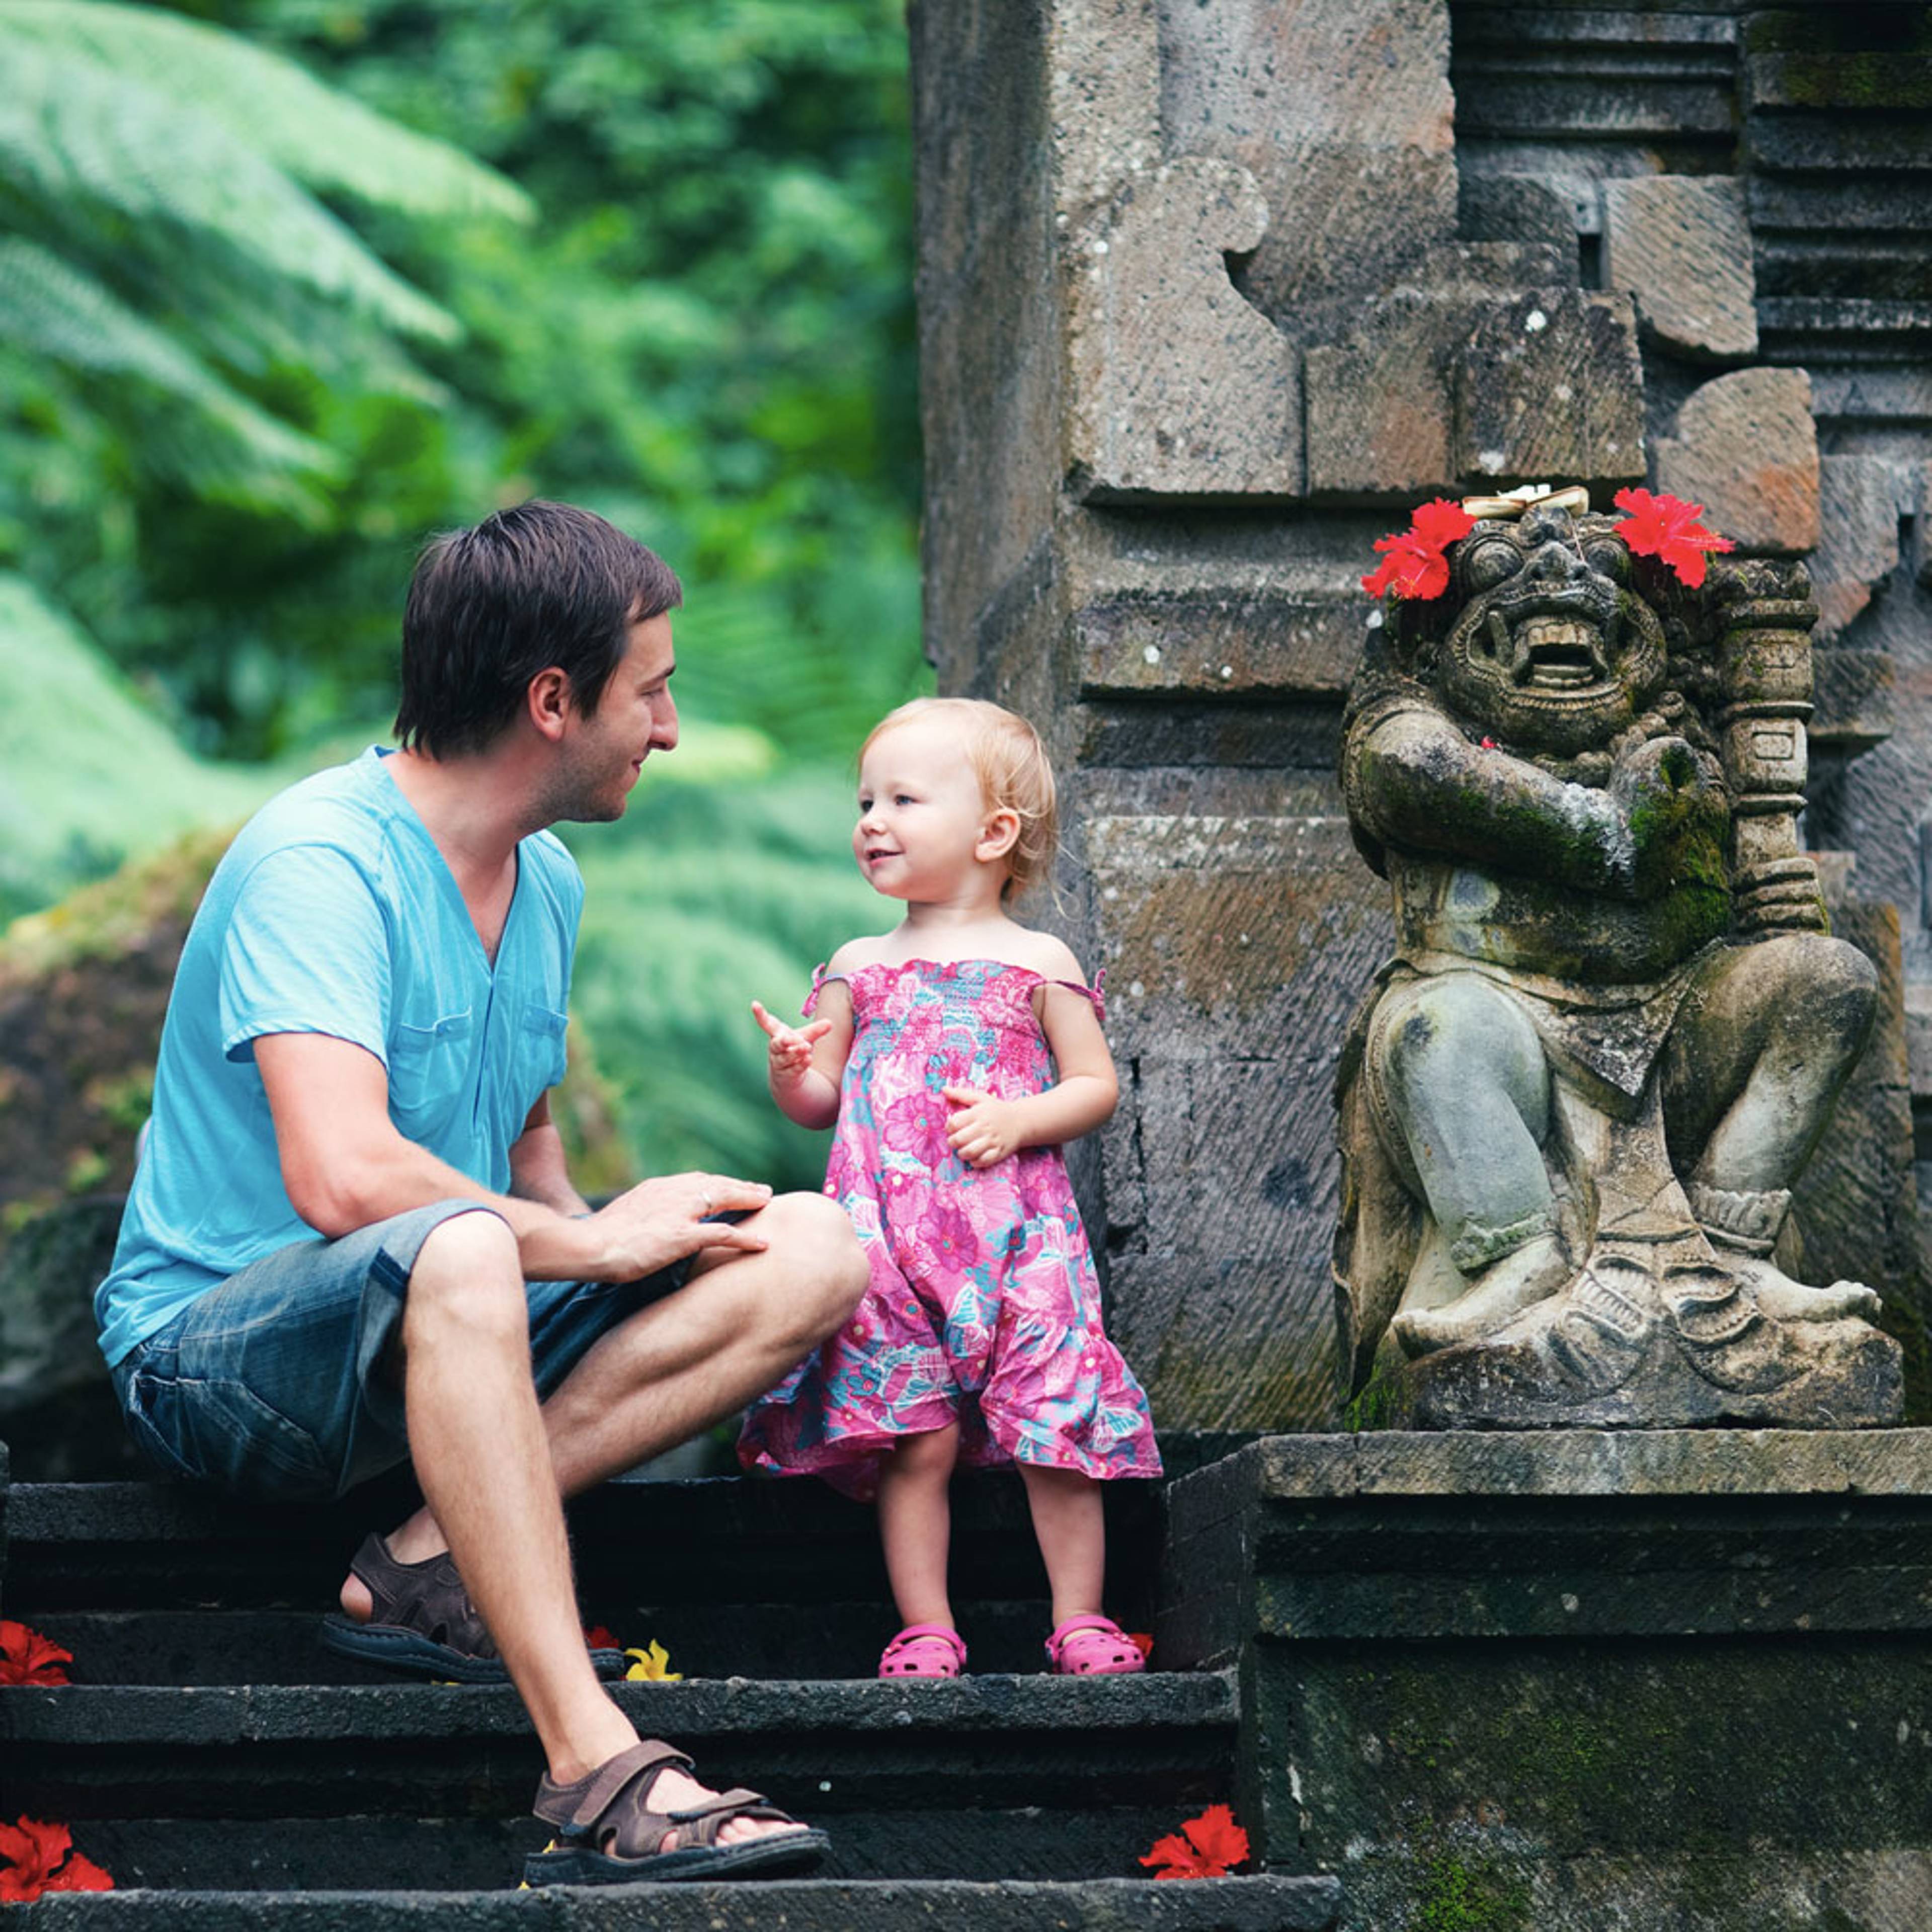 Meine Familienreise nach Bali jetzt individuell gestalten